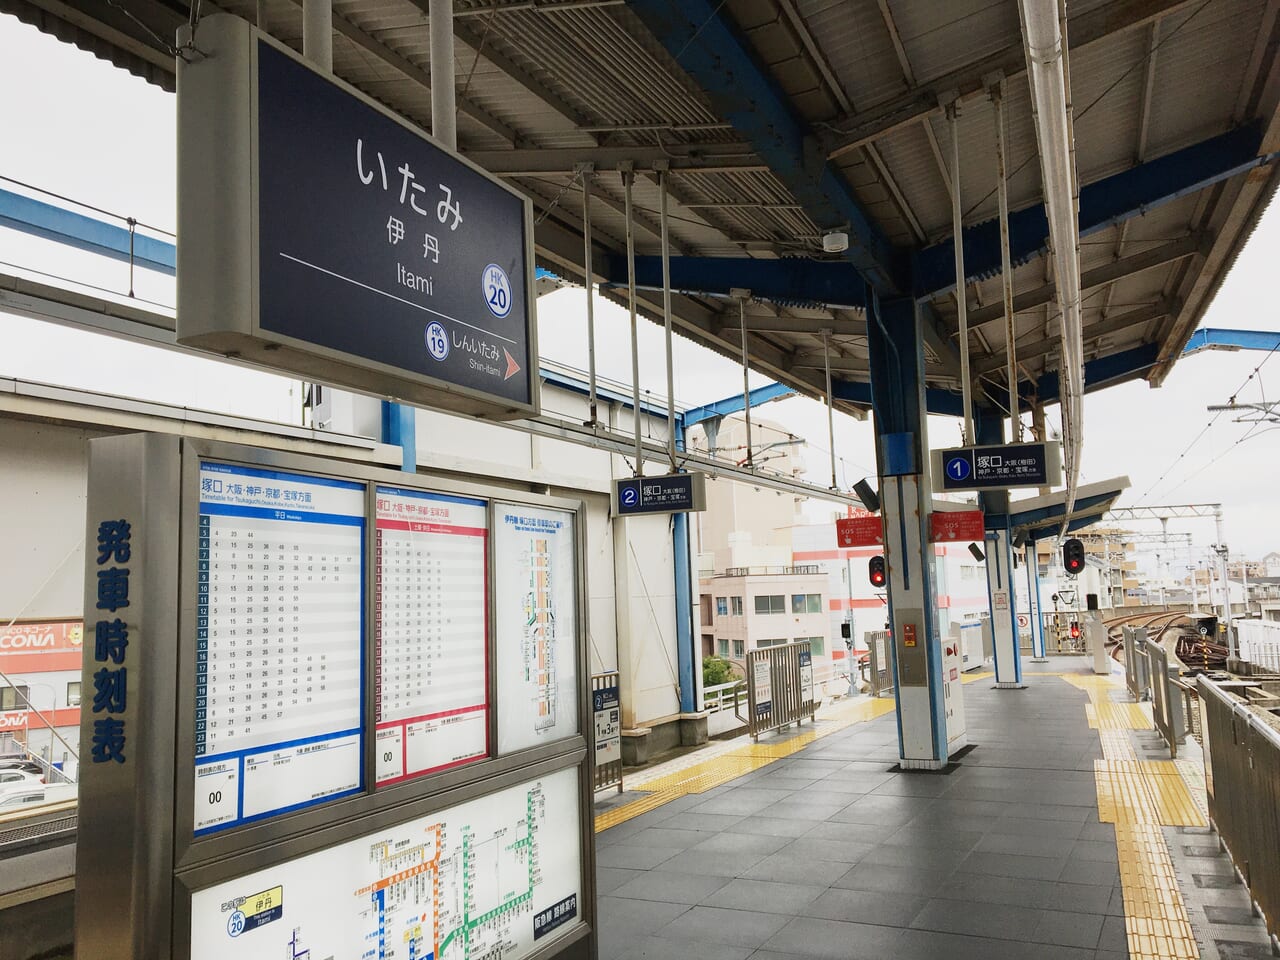 阪急伊丹駅 ワンマン運転